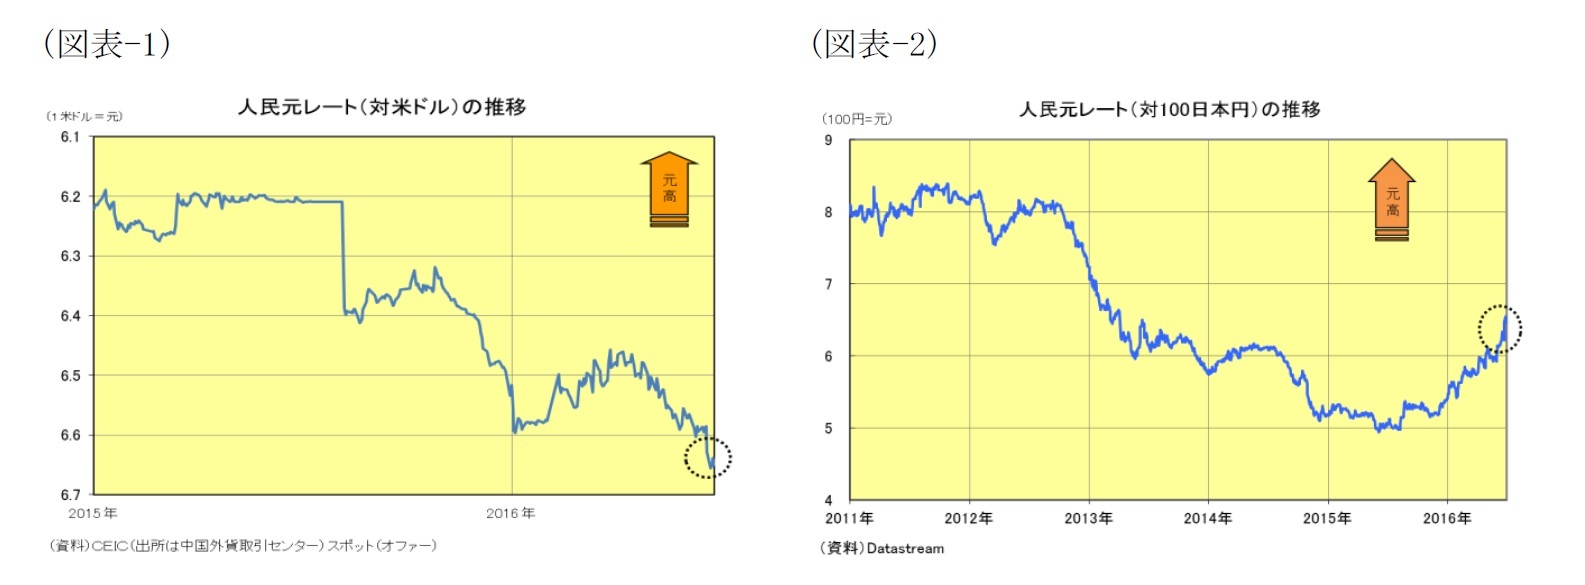 (図表1)人民元レート(対米ドル)の推移/(図表2)人民元レート(対100日本円)の推移